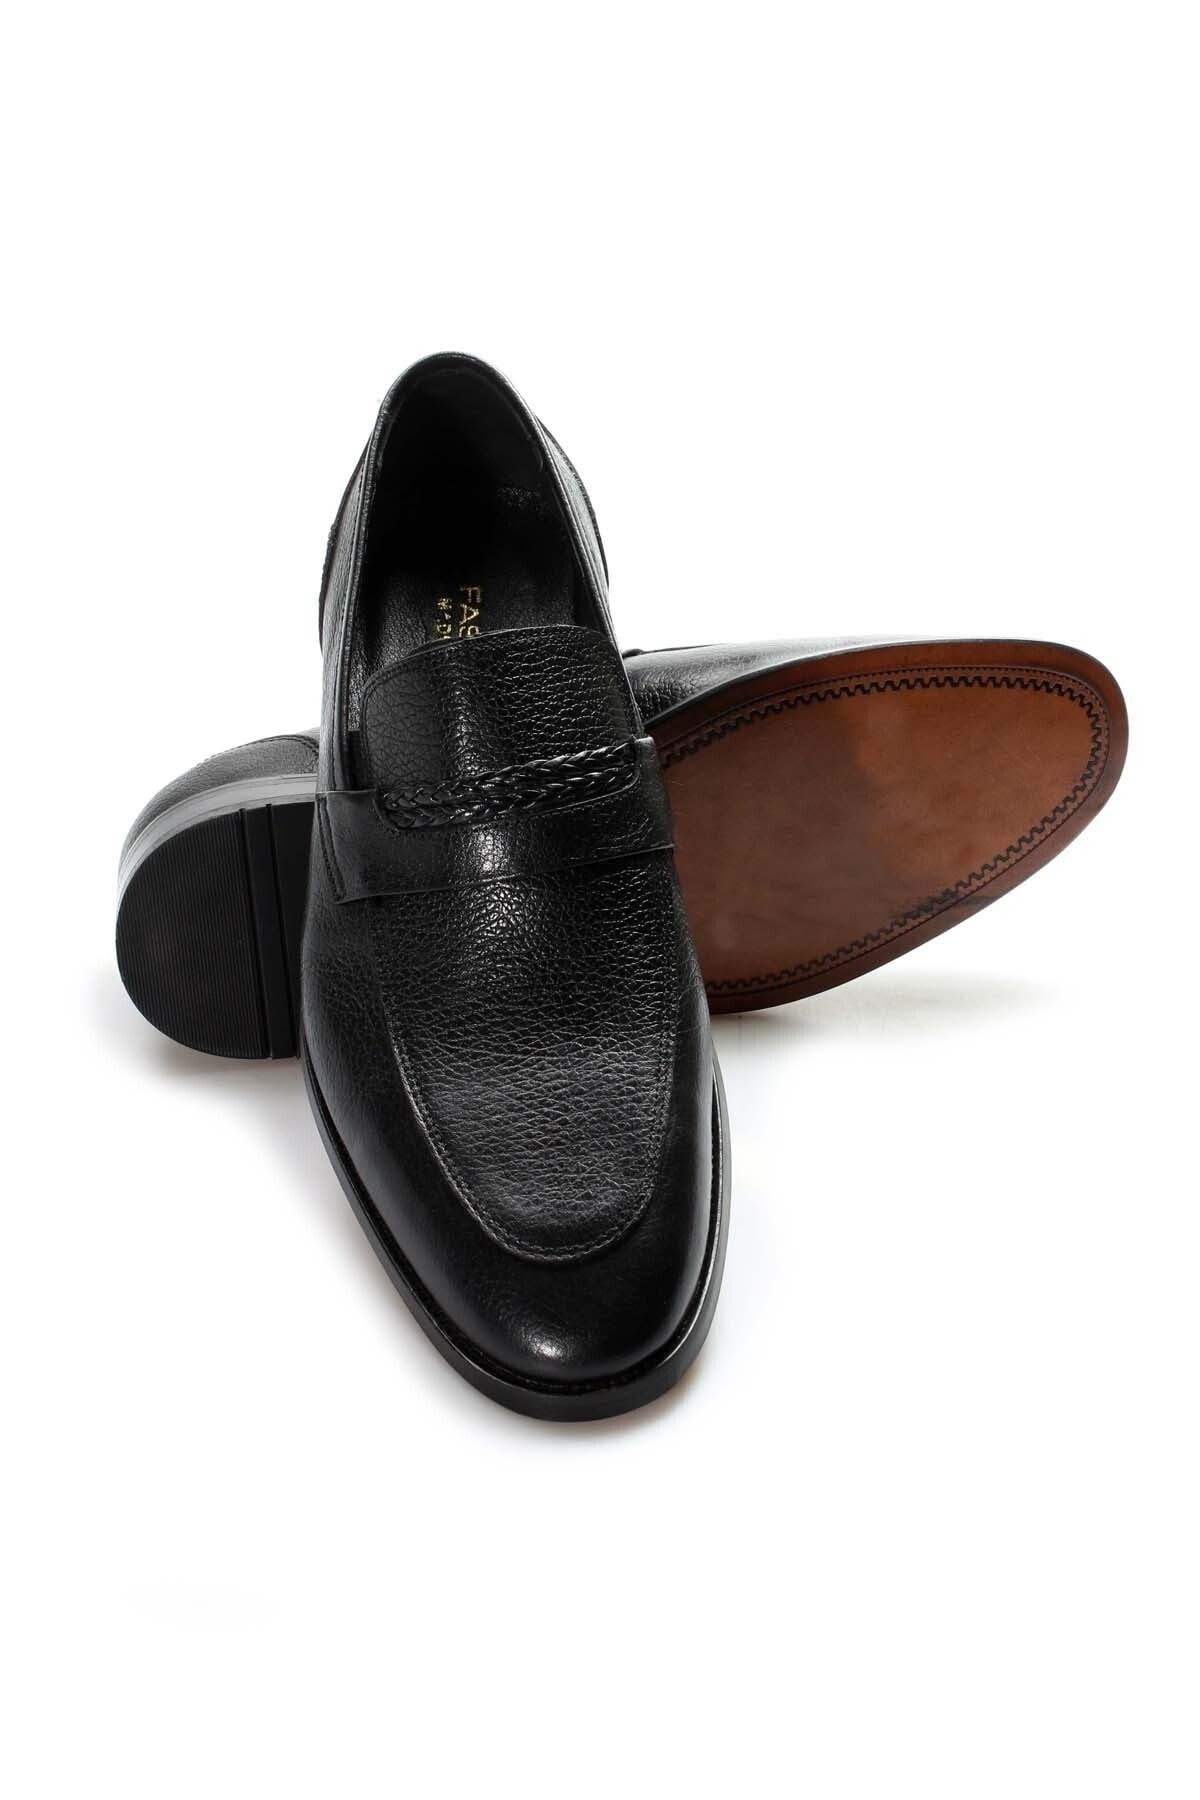 Ayakkabıhane Kösele Taban Içi Dışı Hakiki Deri Siyah Erkek Klasik Ayakkabı Ah08932131406